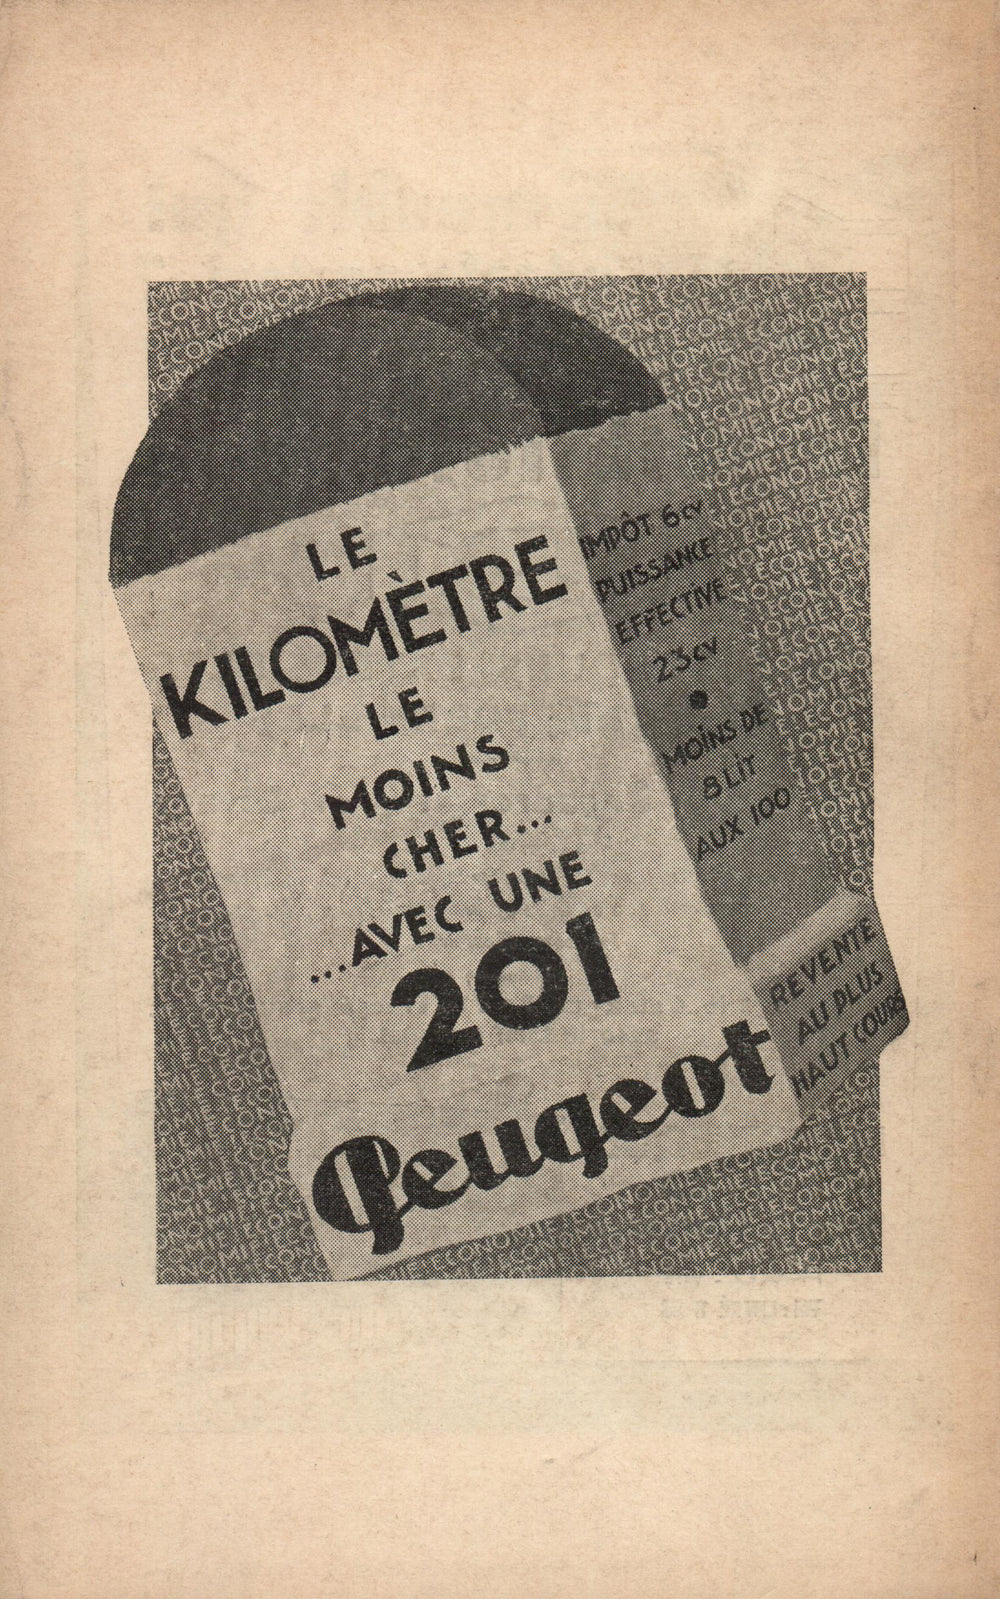 La Nouvelle Revue Française N° 223 (Avril 1932)